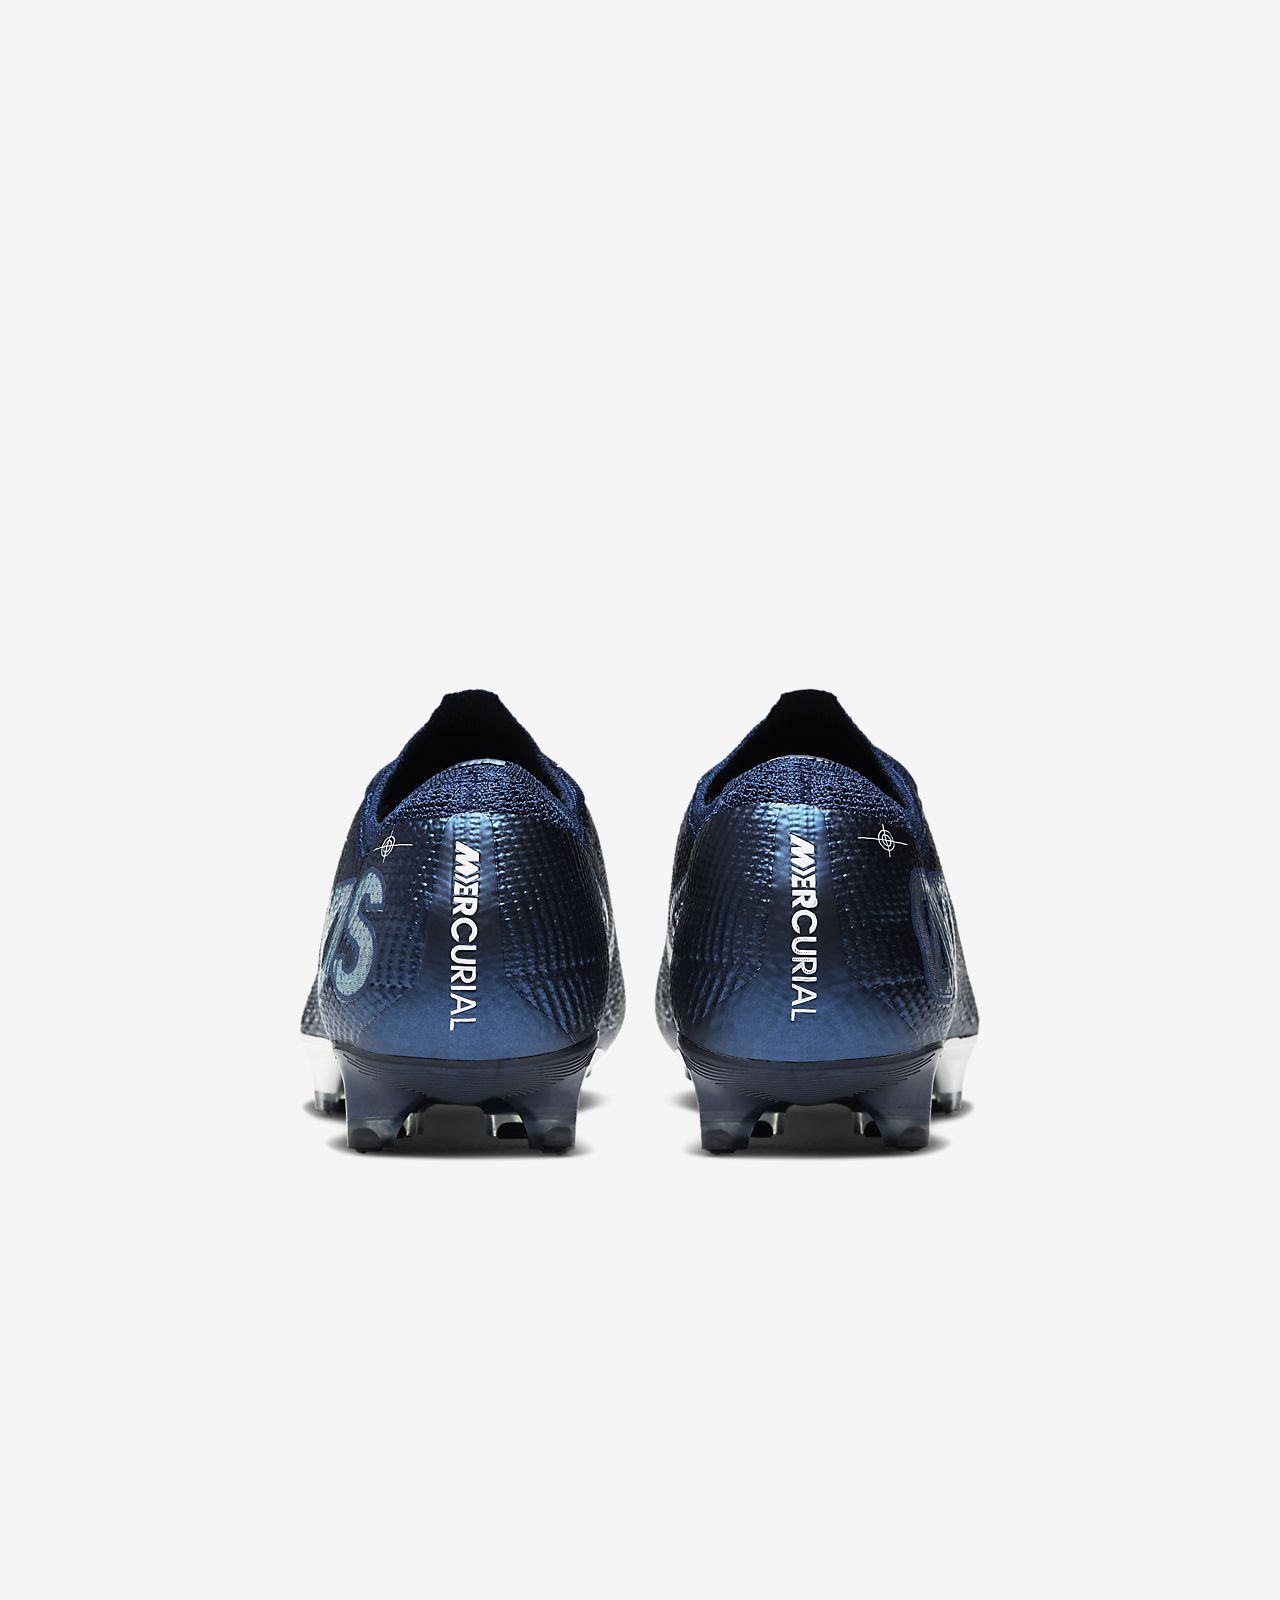 Nike Mercurial Vapor 13 Elite FG Football Boots Harrods.com